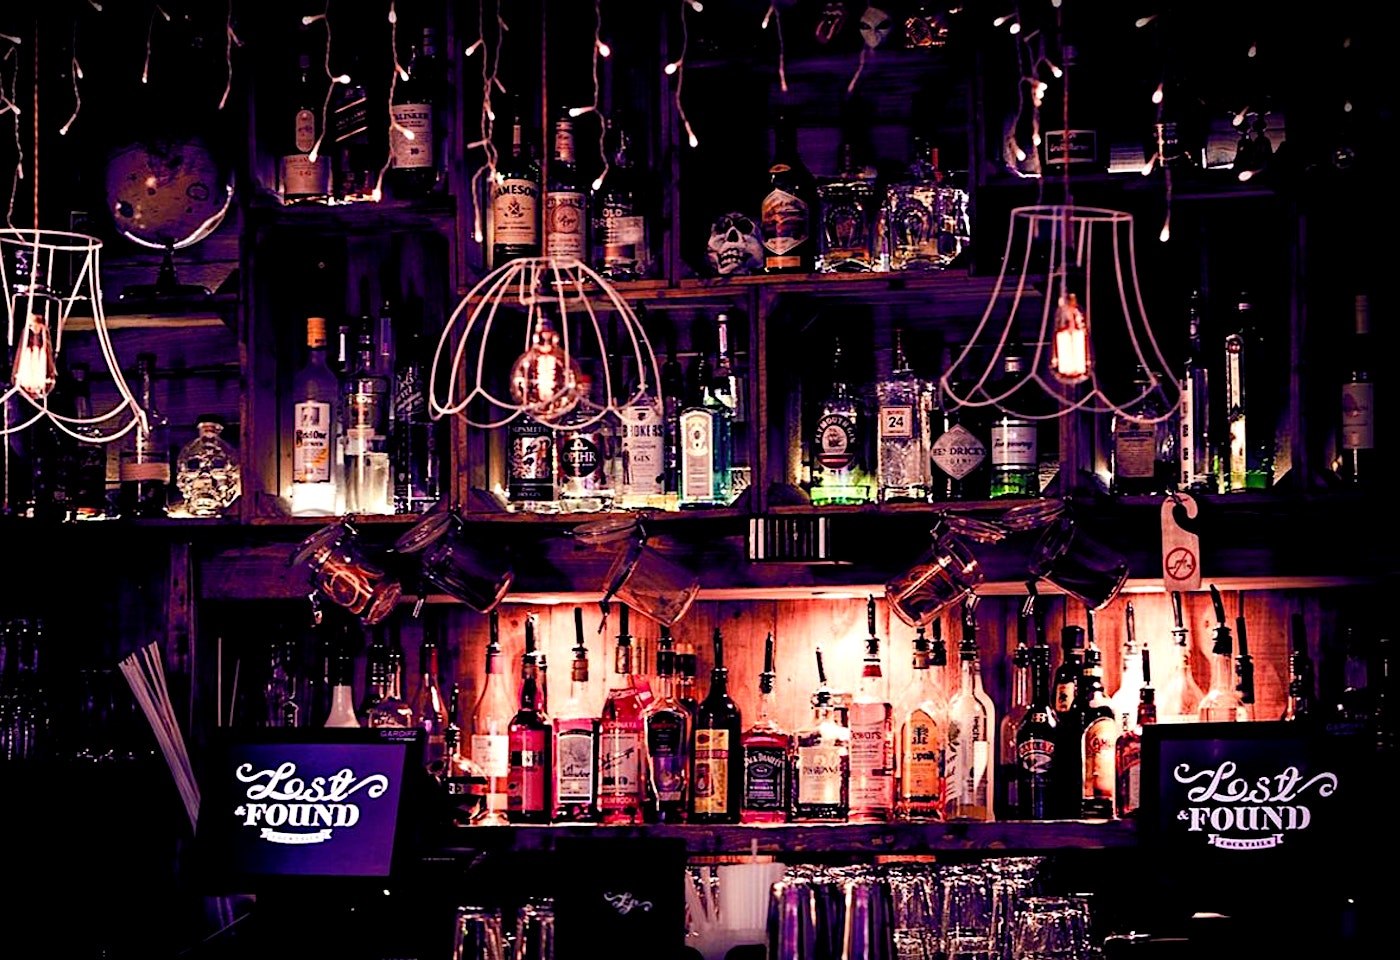 Lost & Found balham cocktail bar